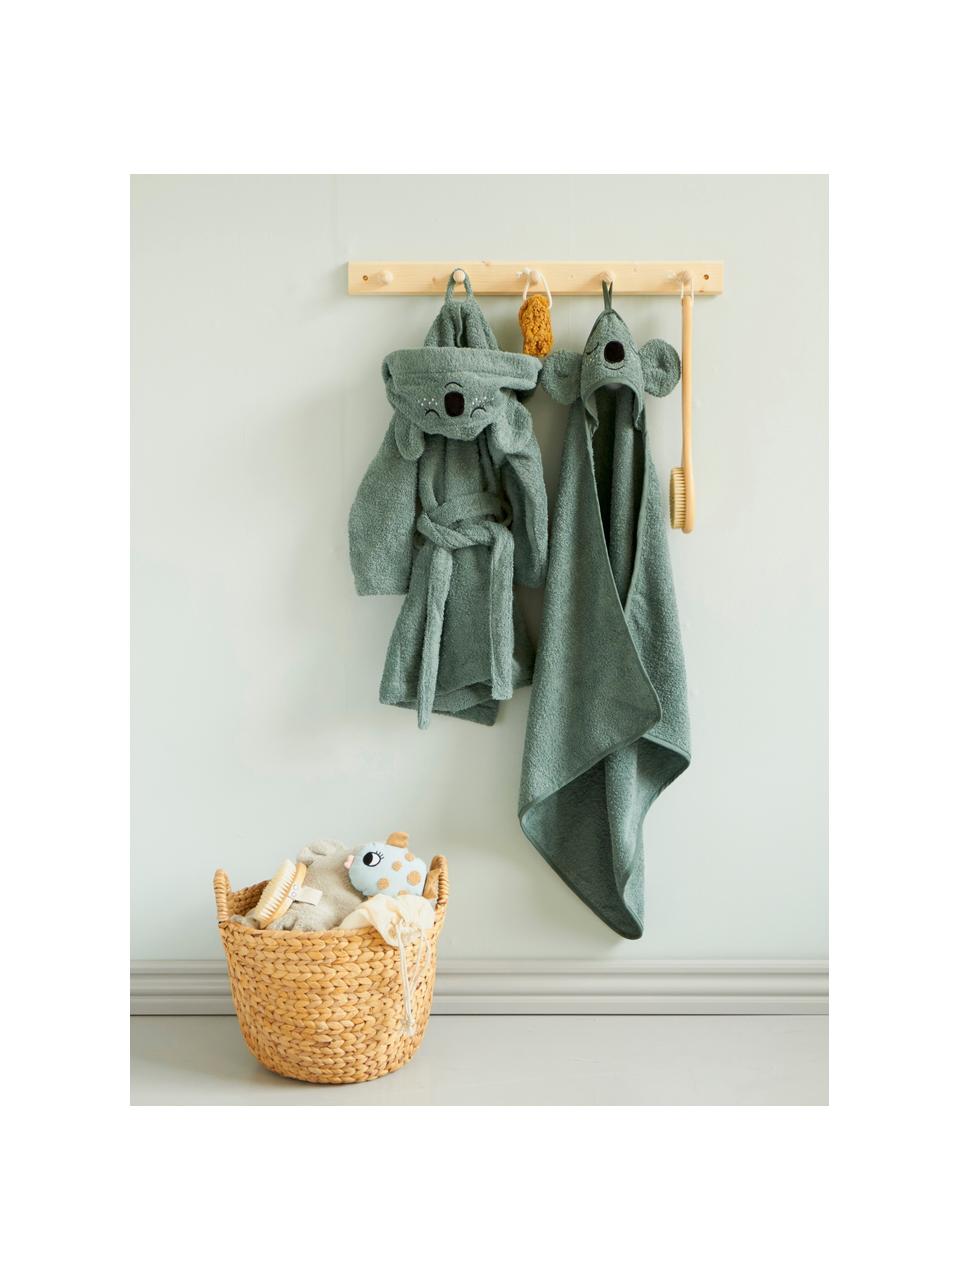 Ręcznik dla dzieci z bawełny organicznej Koala, 100% bawełna organiczna z certyfikatem GOTS, Szałwiowy zielony, S 72 x D 72 cm